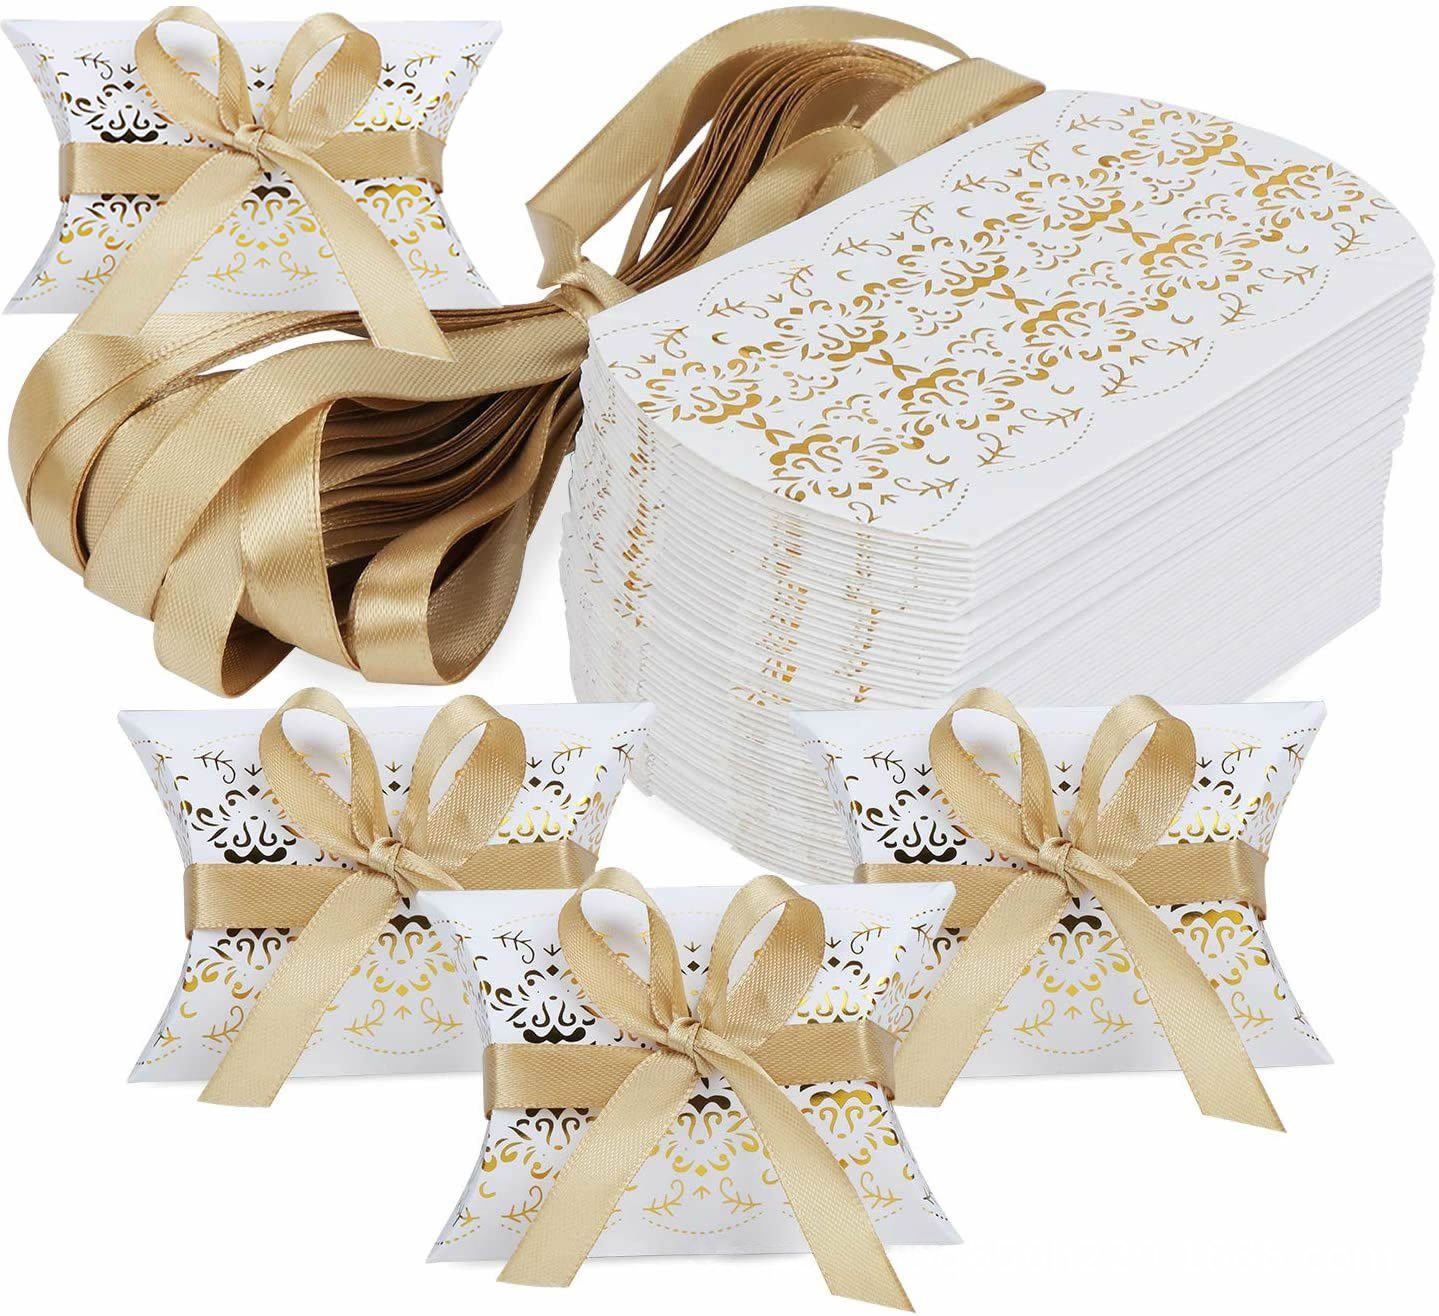 Coonoor Auflagenbox 50 Stück Print Kissen-Form-Hochzeits-Geschenkboxen,Süßigkeiten-Box